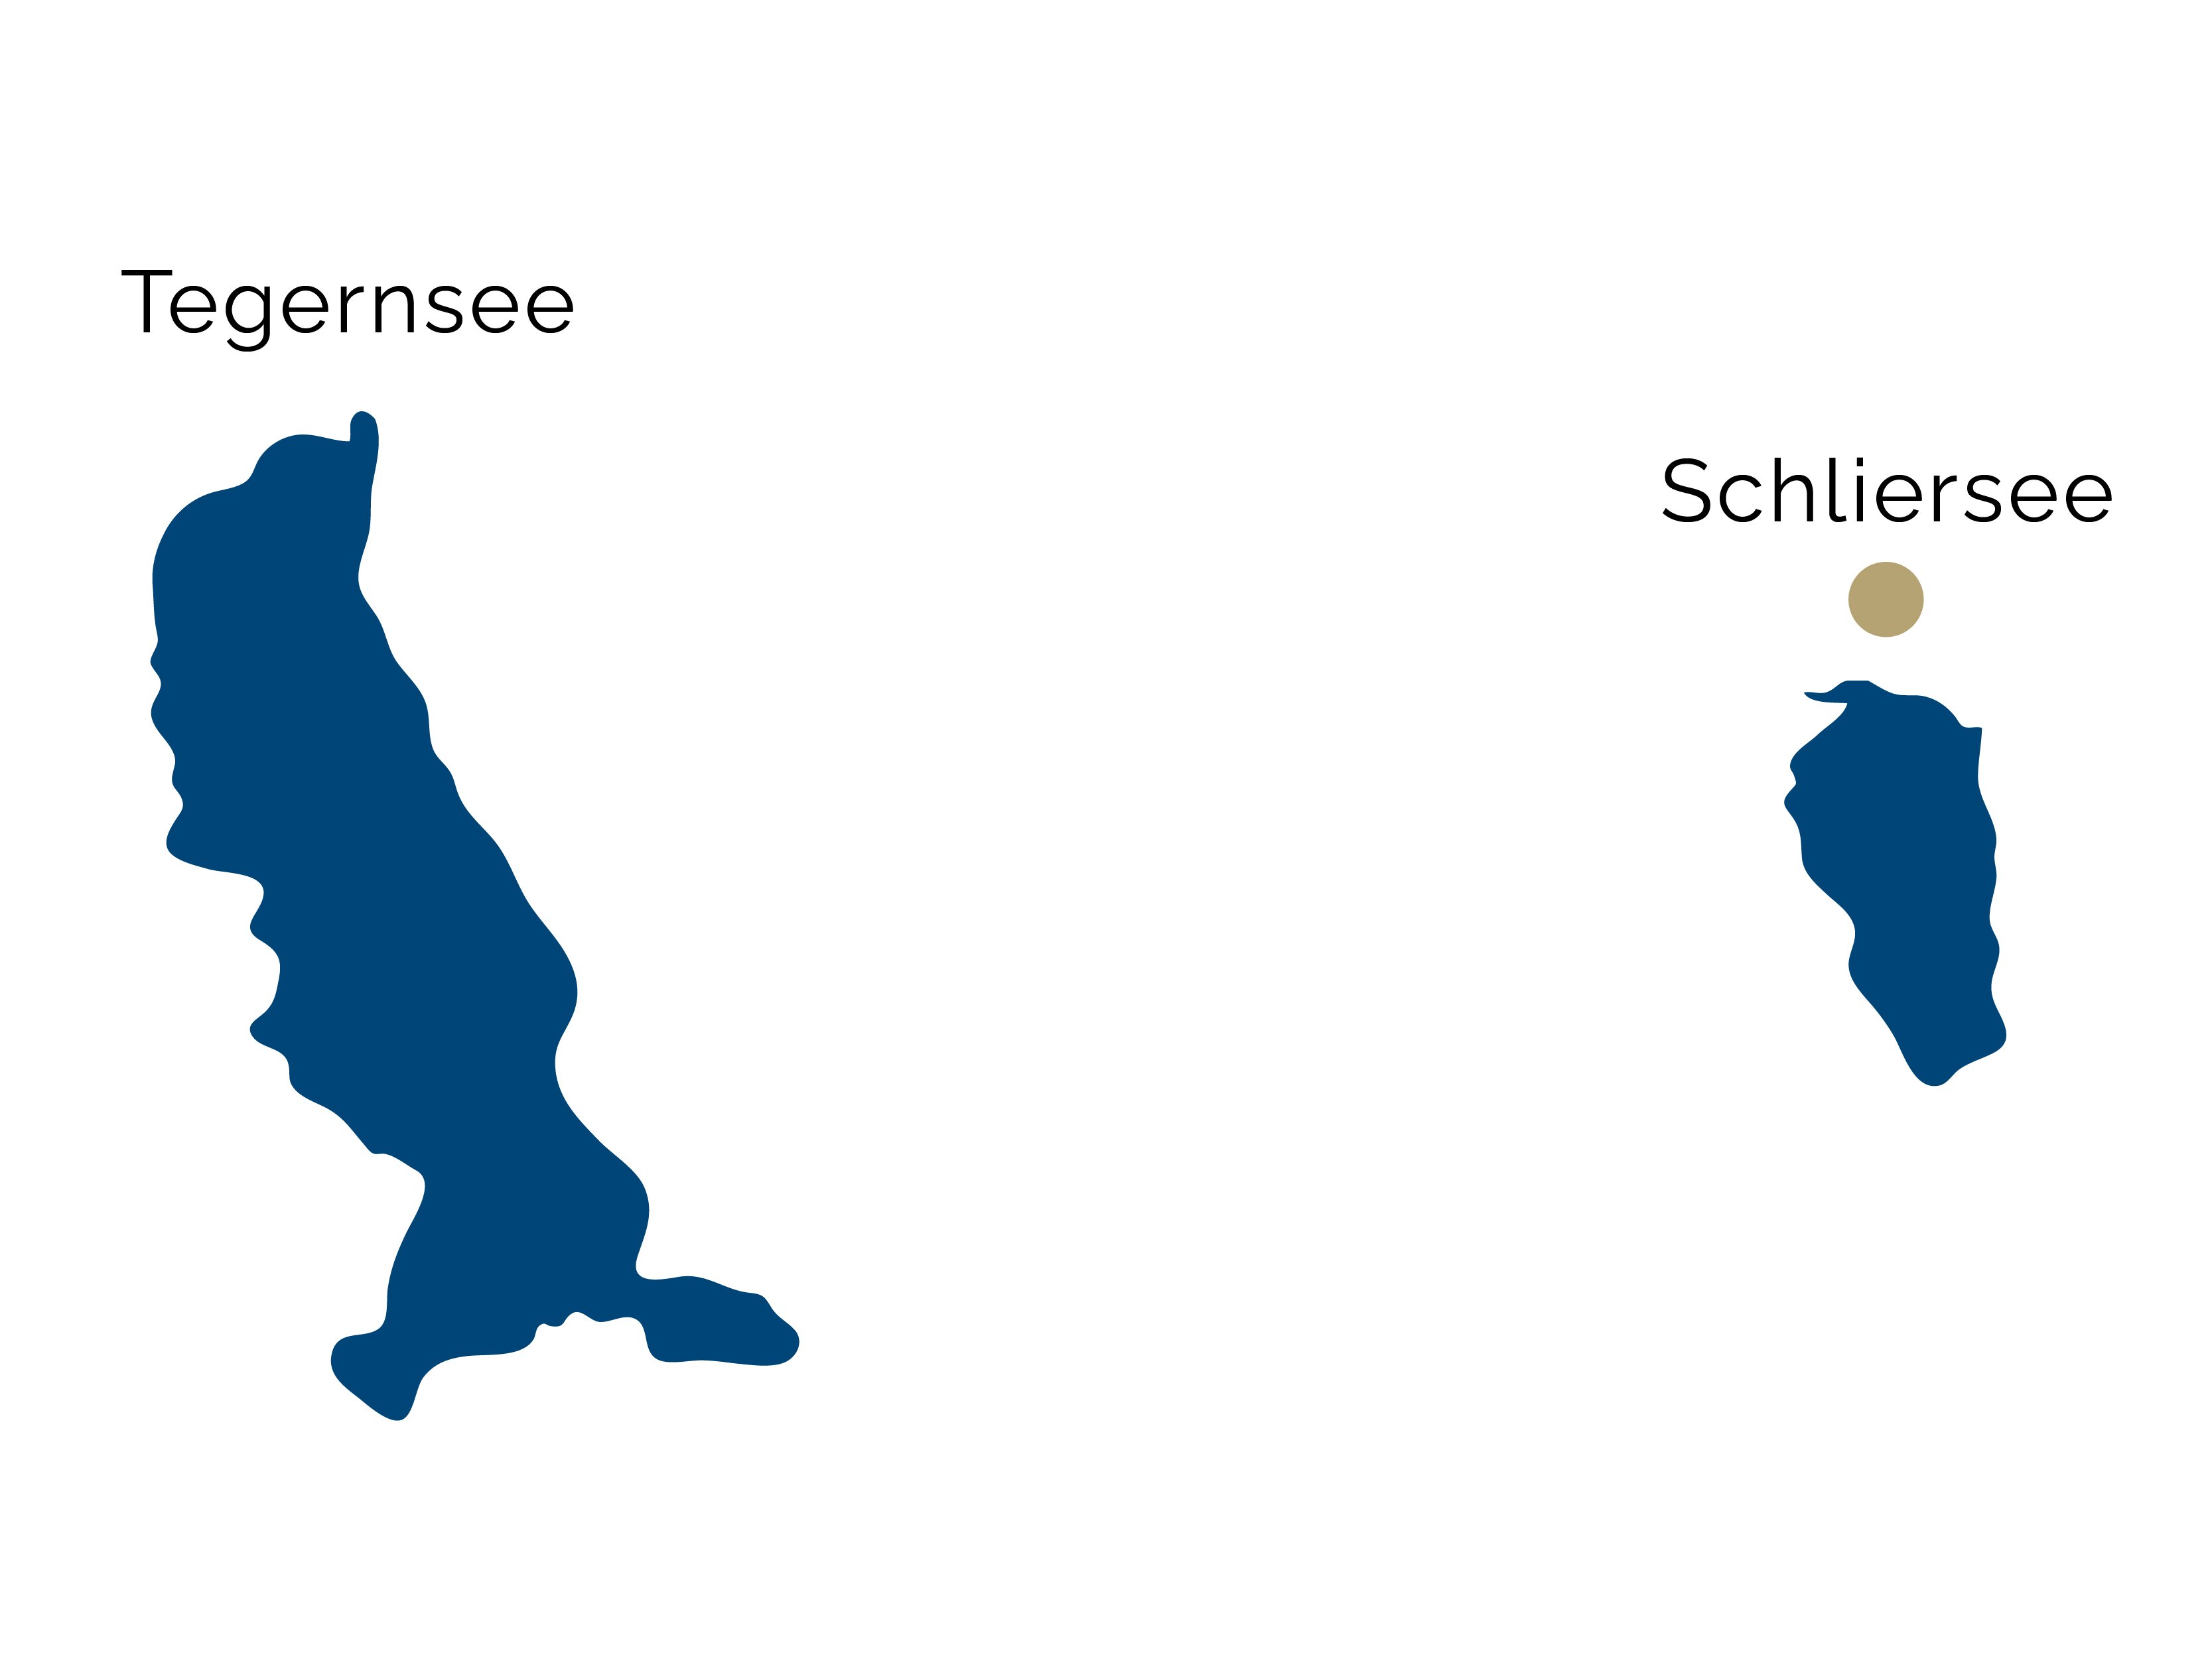 Karte von der Region Schliersee